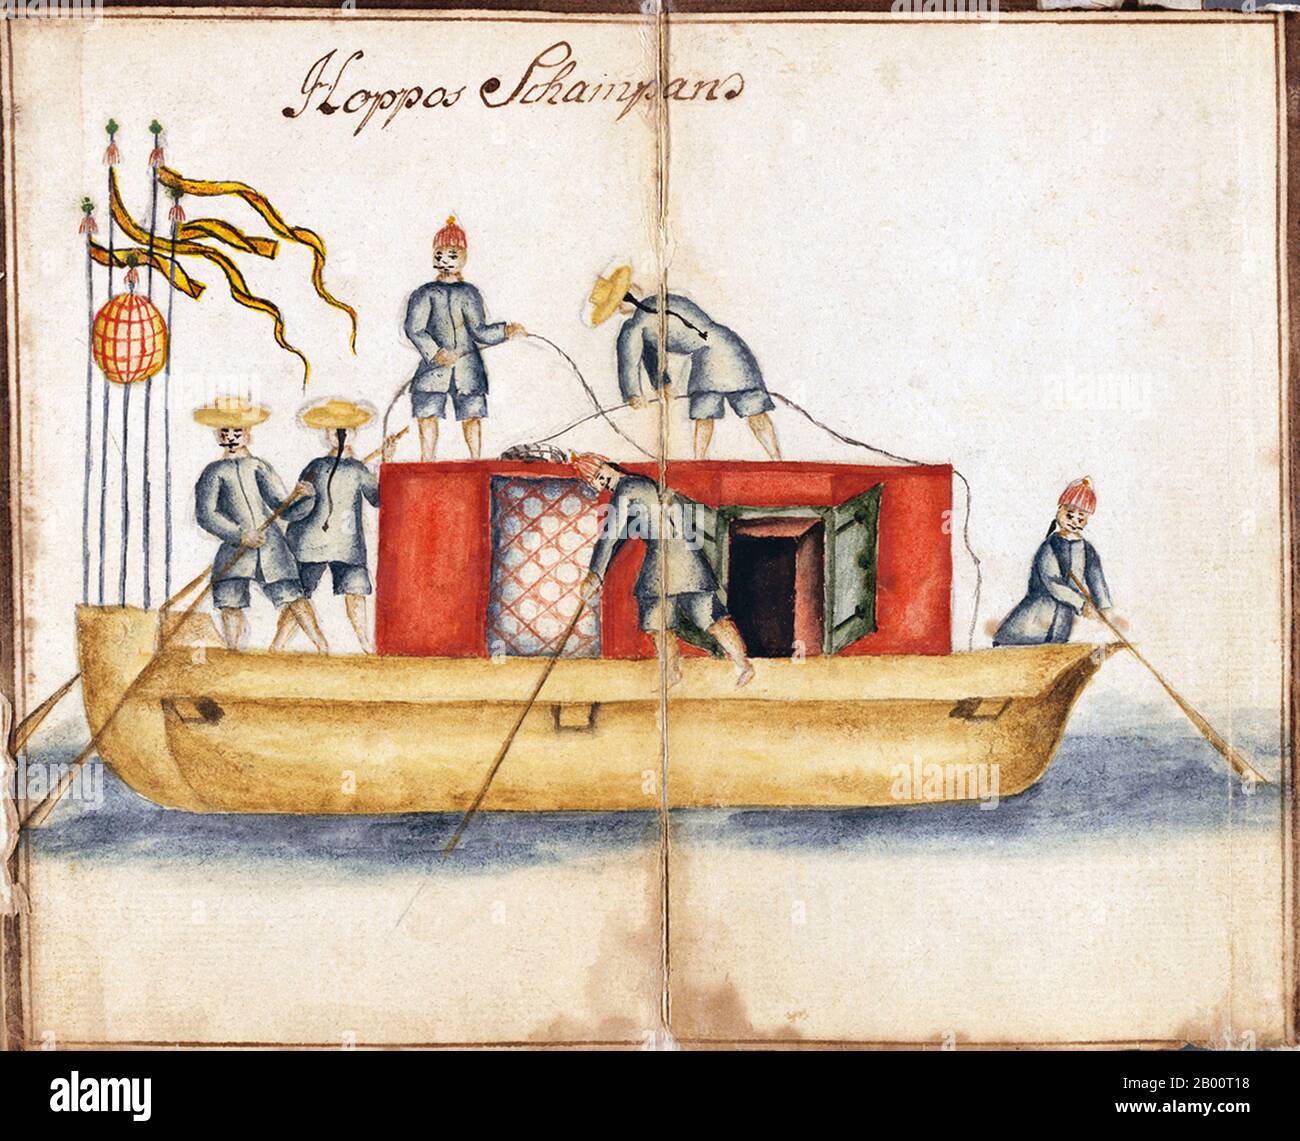 Chine/Suède: Peinture du sampan de la Hoppo, Canton (Guangzhou), c. 1749. De 1746 à 1749, le navire suédois Götha Lejon a effectué une mission mercantile dans le canton. Plusieurs récits de ce qui s'est passé ont survécu. Un journal manuscrit a été attribué à Carl Fredrik von Schantz (1727-92). Un autre récit de la mission de Götha Lejon a été compilé par Carl Johan Gethe (1728-65), un cartographe et historien de la nature. Son journal est intitulé «itinéraire d’un voyage vers l’Inde de l’est commencé le 18 octobre 1746 et se terminant le 20 juin 1749». La Swedish East India Company (SOIC) a été fondée en 1731. Banque D'Images